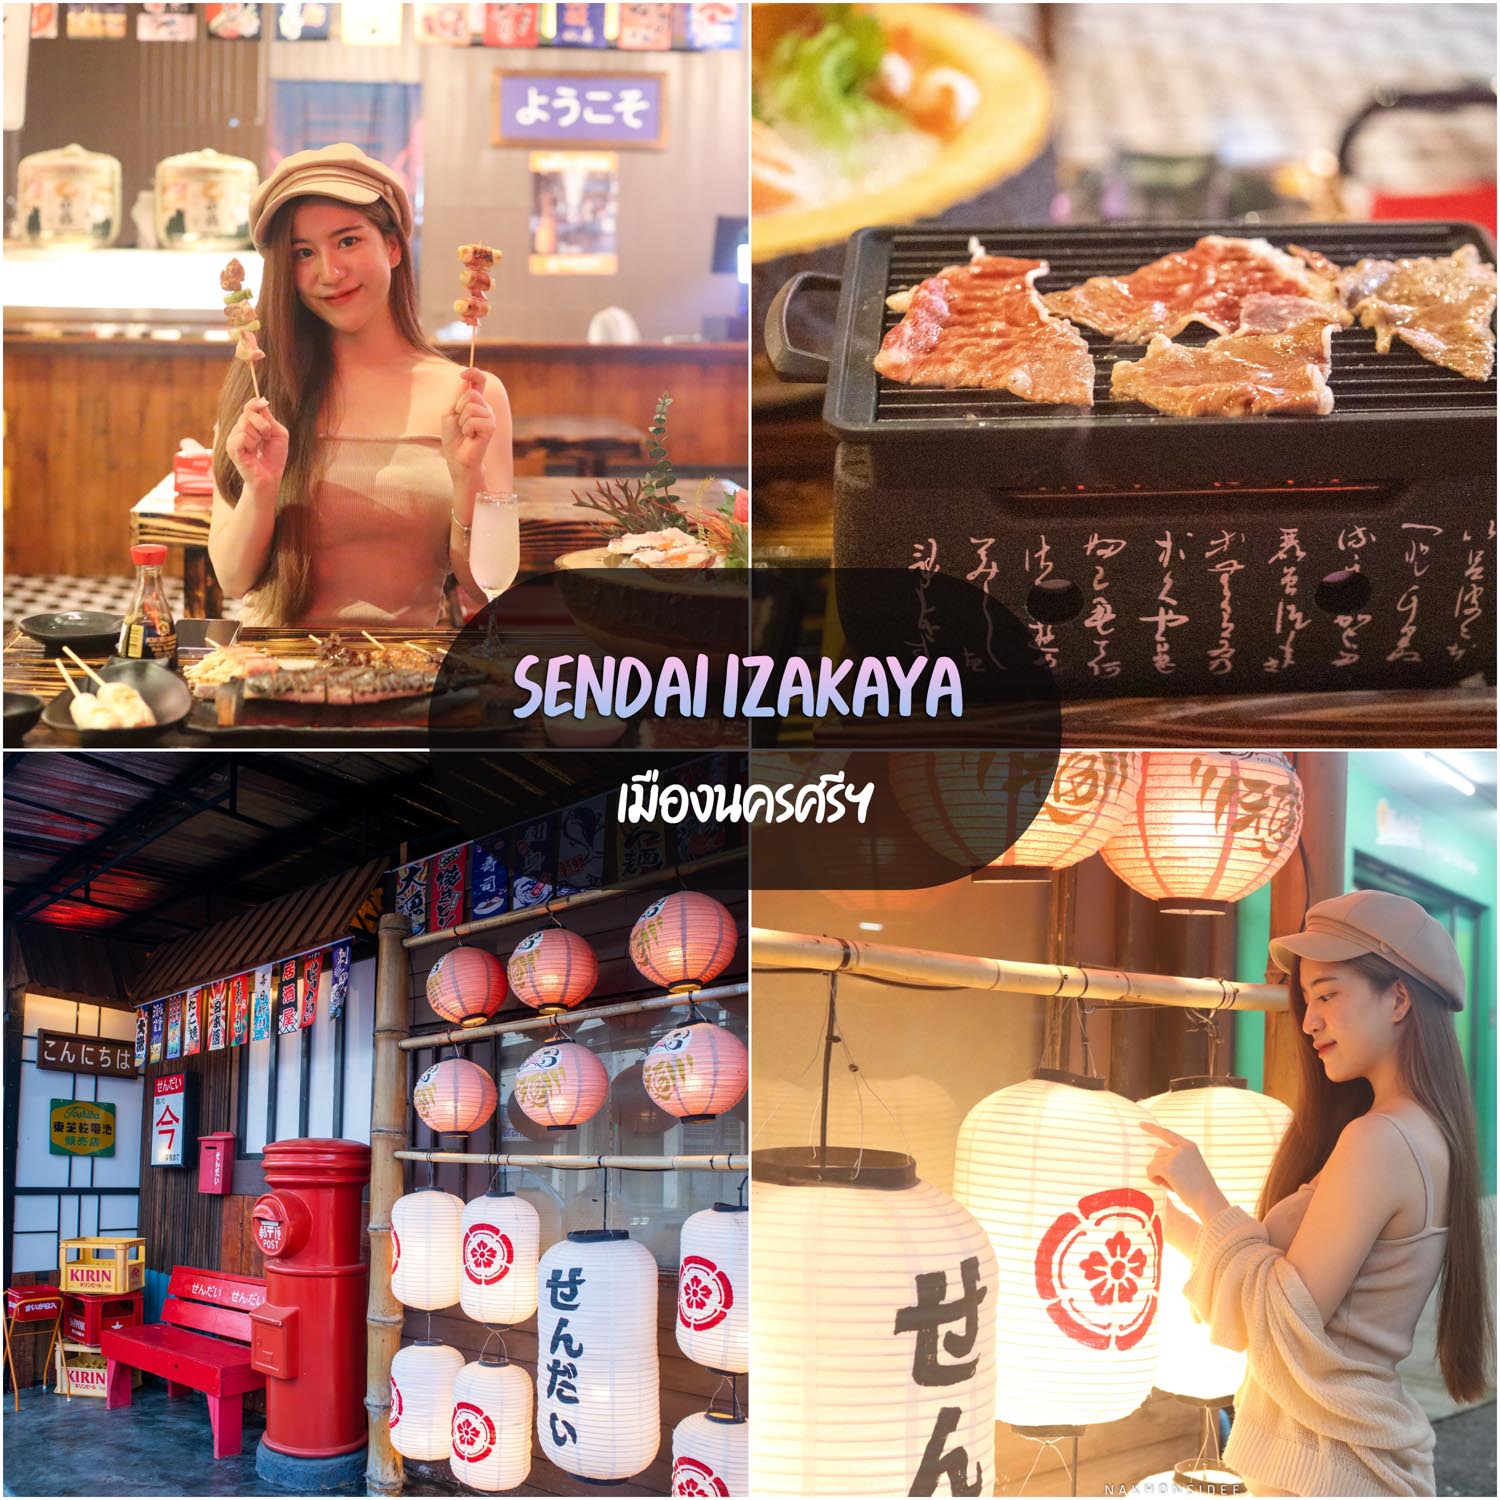 Sendai-Izakaya -ร้านนั่งชิวเปิดใหม่ใจกลางเมือง-สไตล์ญี่ปุ่นมวากก-อาหารอร่อยด้วยน้าา-การันตีเลยย-
 ที่เที่ยวนครศรีธรรมราช